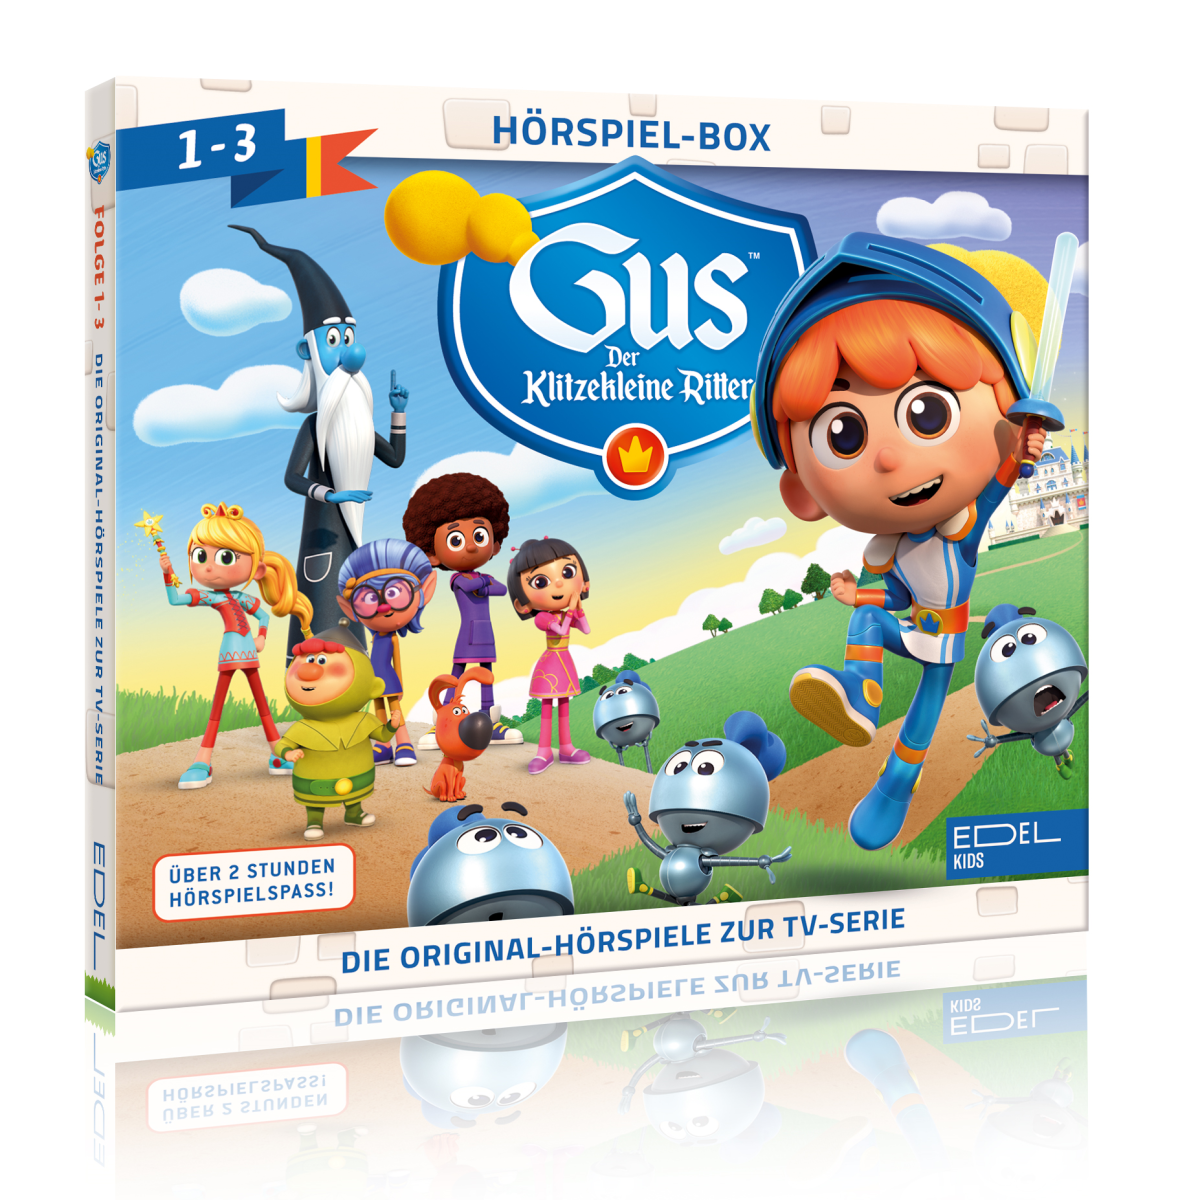 Edel:Kids präsentiert Original-Hörspiel und DVDs zu "Gus - Der klitze kleine Ritter"